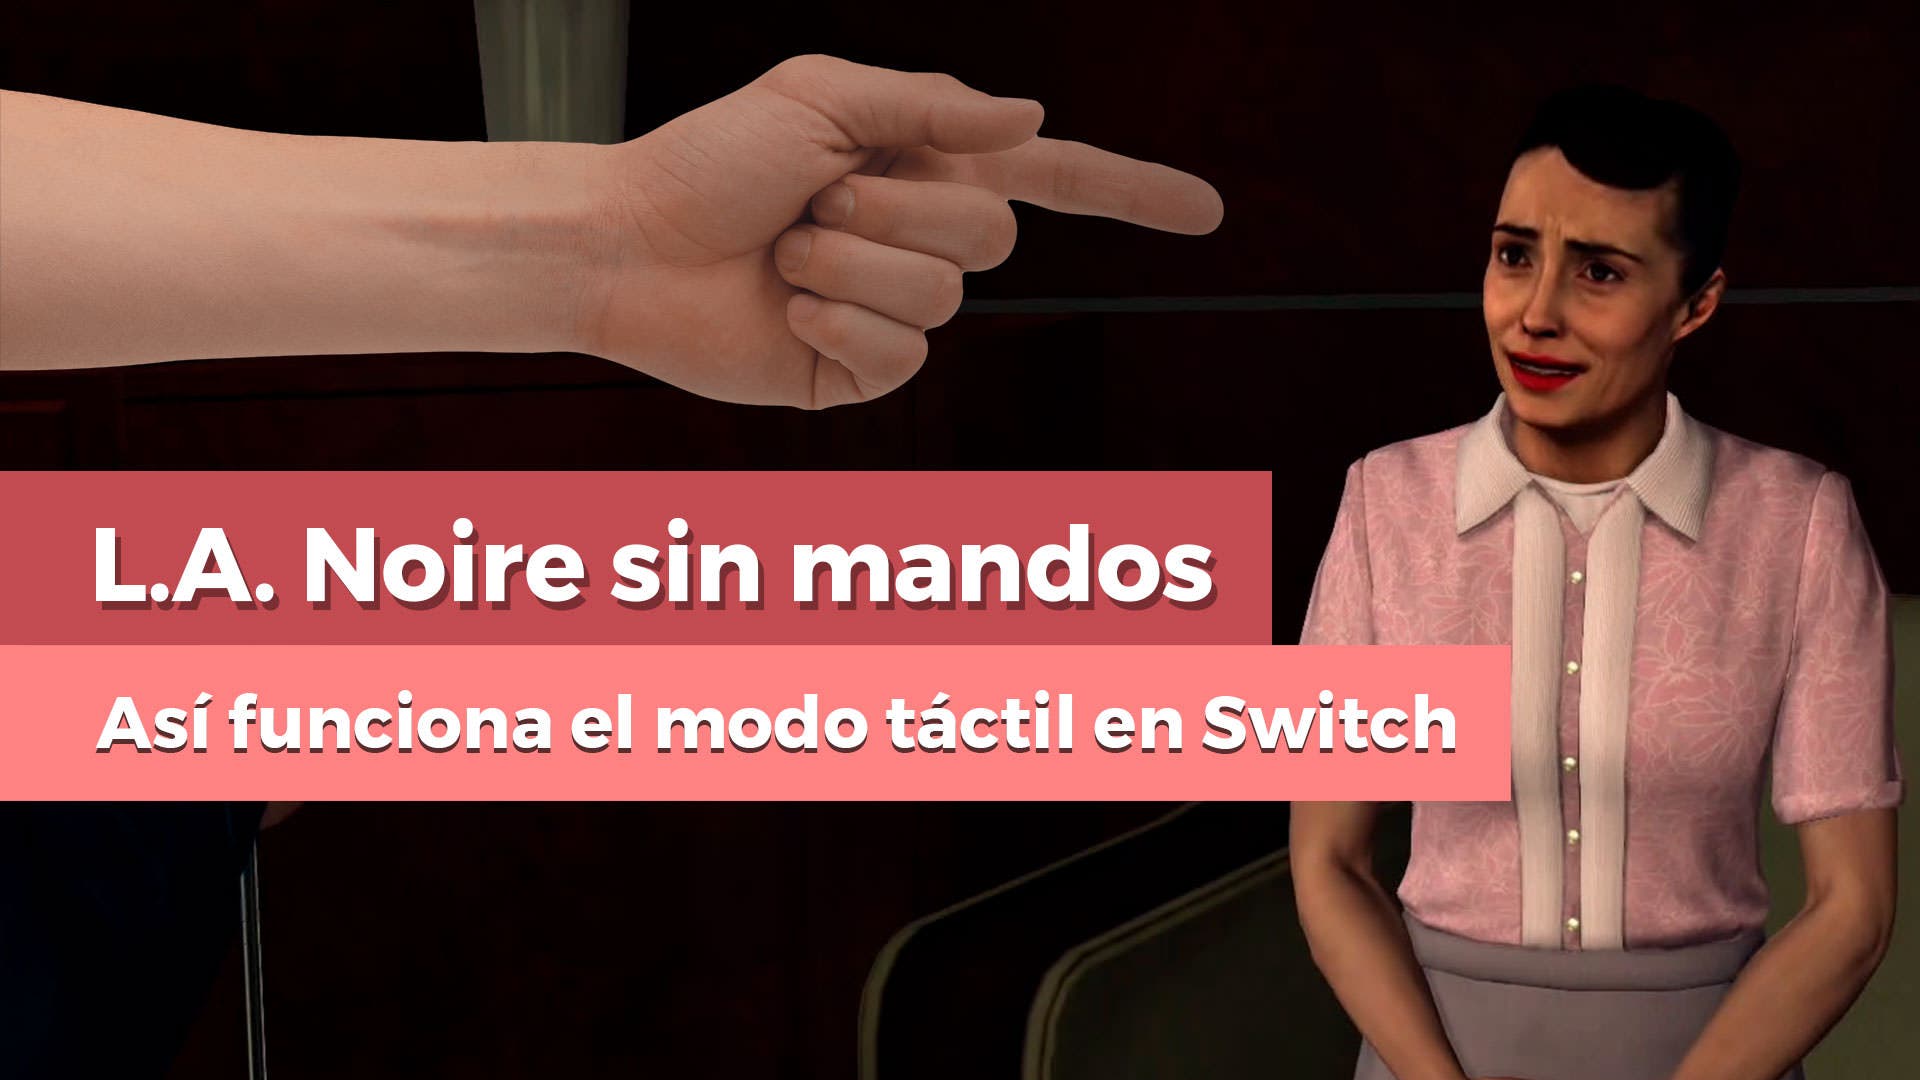 [Vídeo] Os enseñamos el modo táctil de L.A. Noire en Nintendo Switch